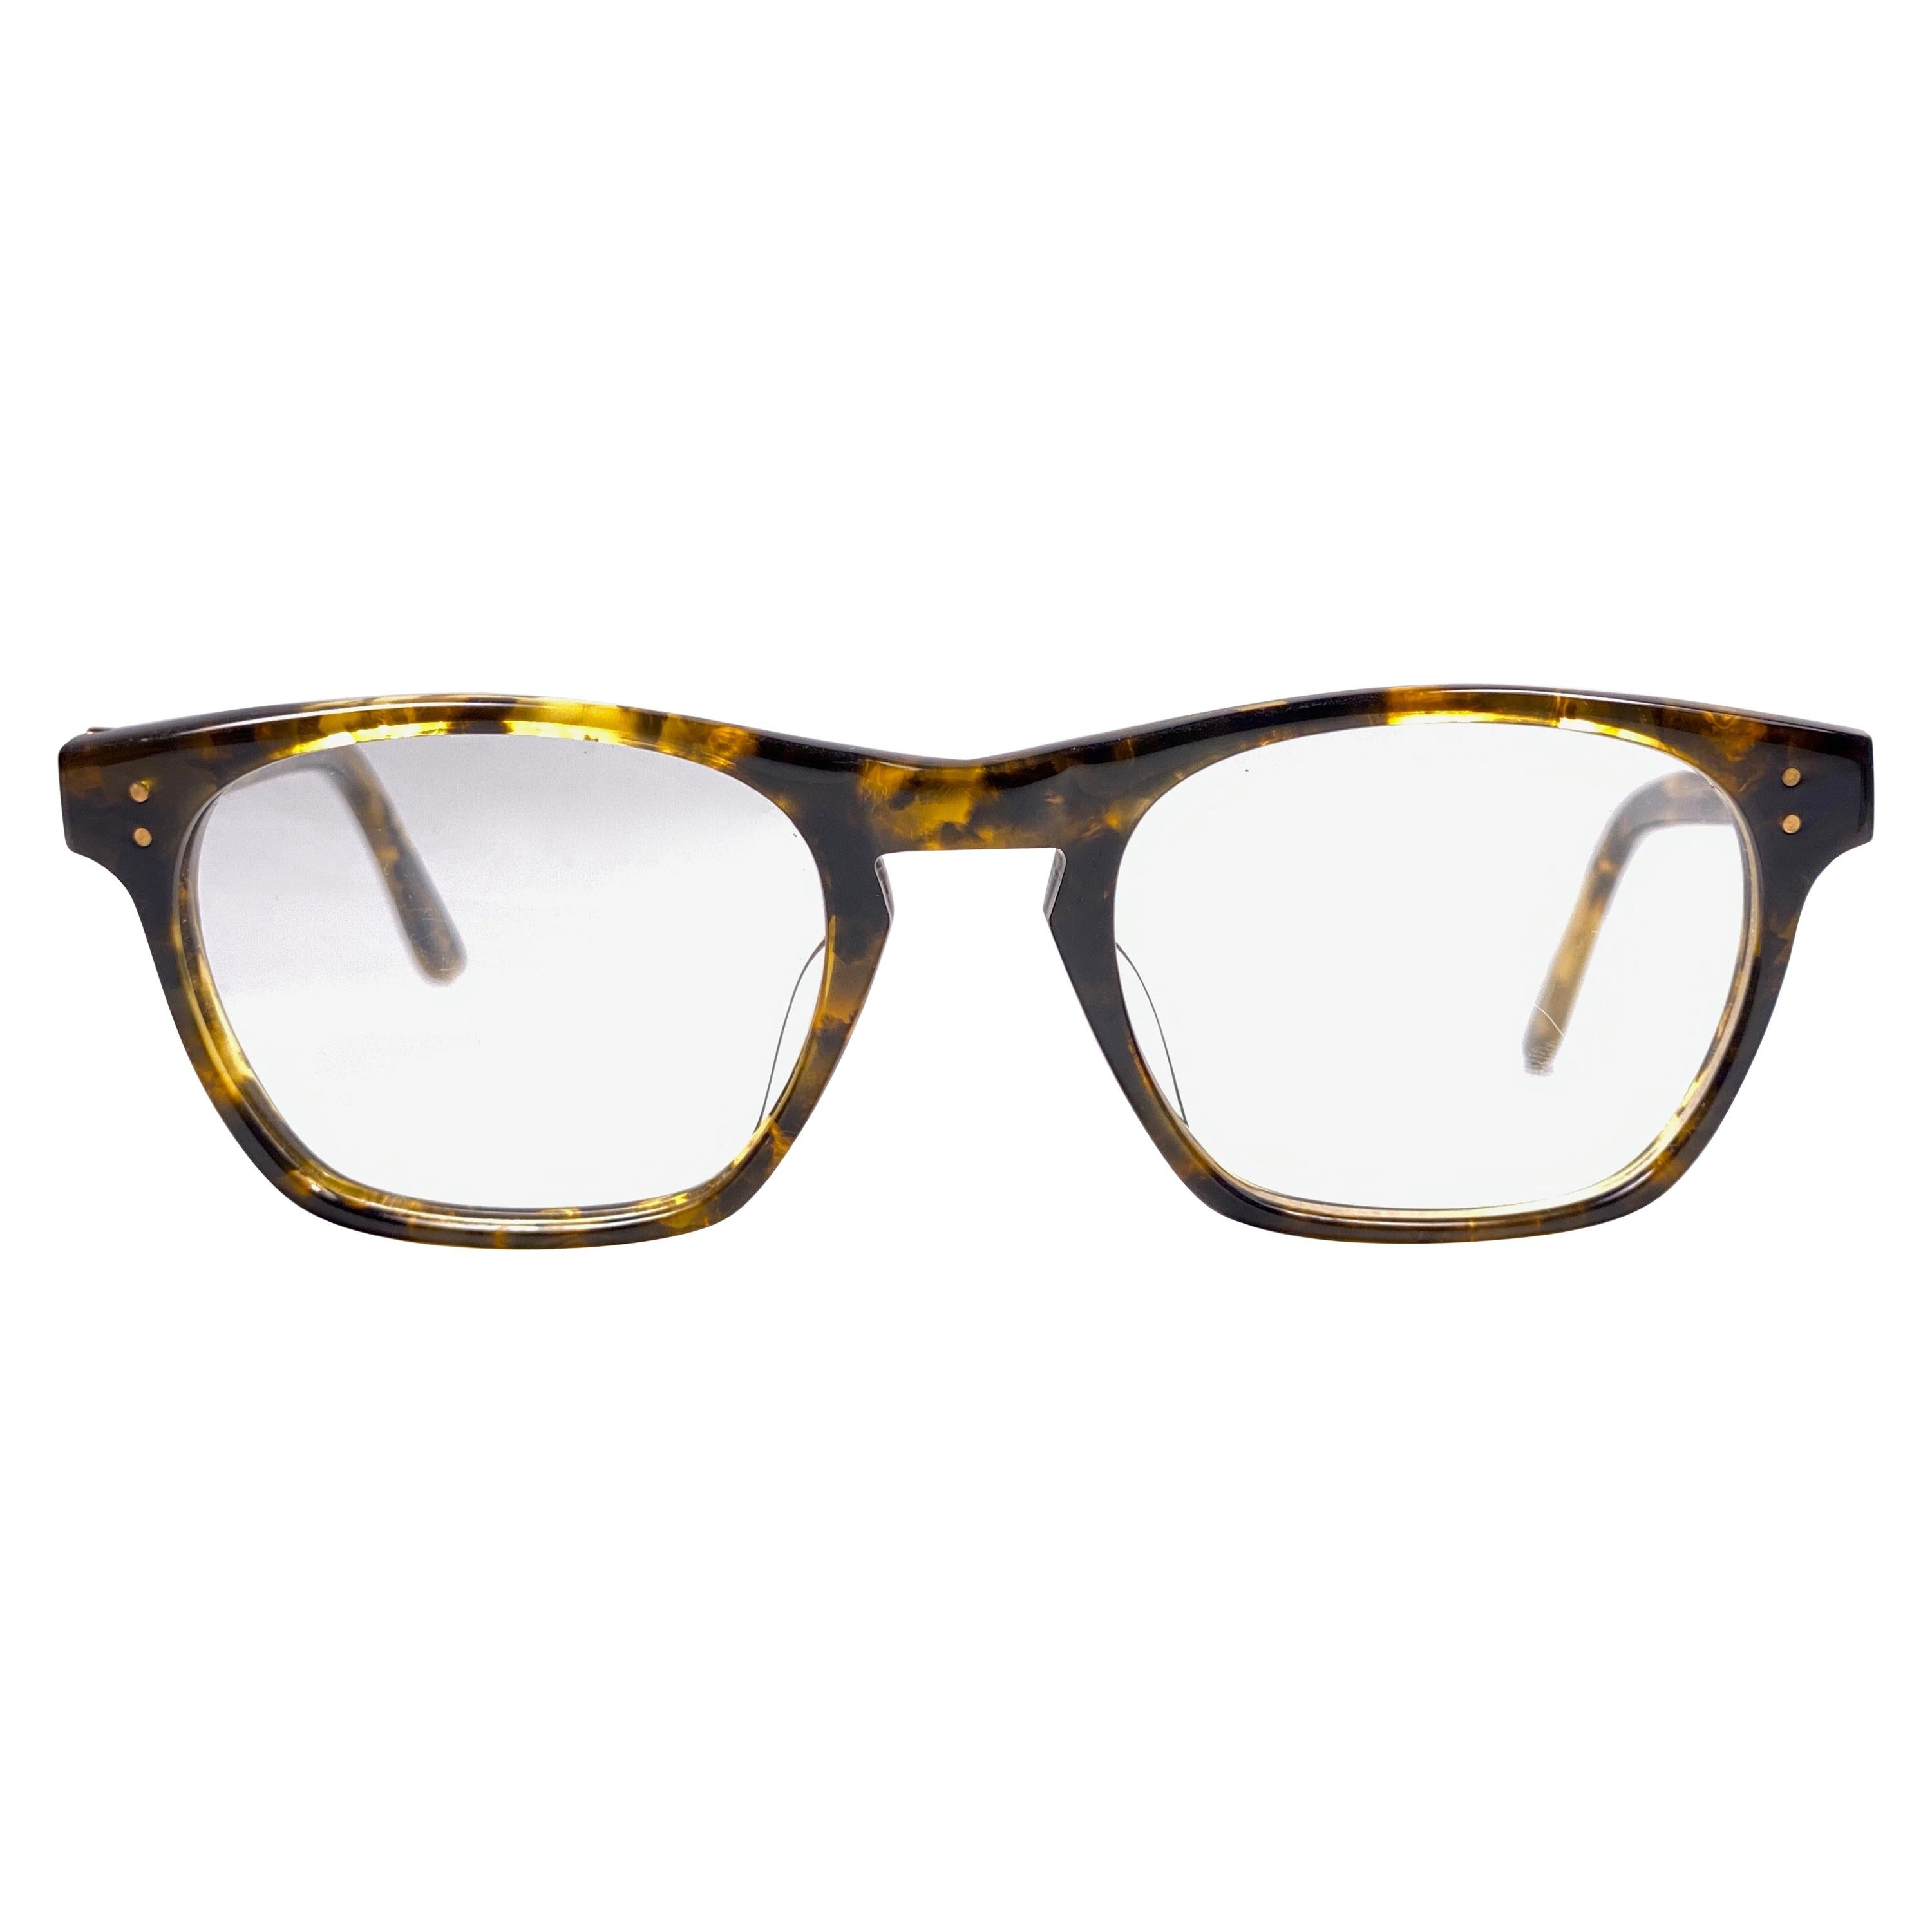 New Vintage Jean Paul Gaultier 57 0073 Prescription Tortoise Japan Sunglasses 